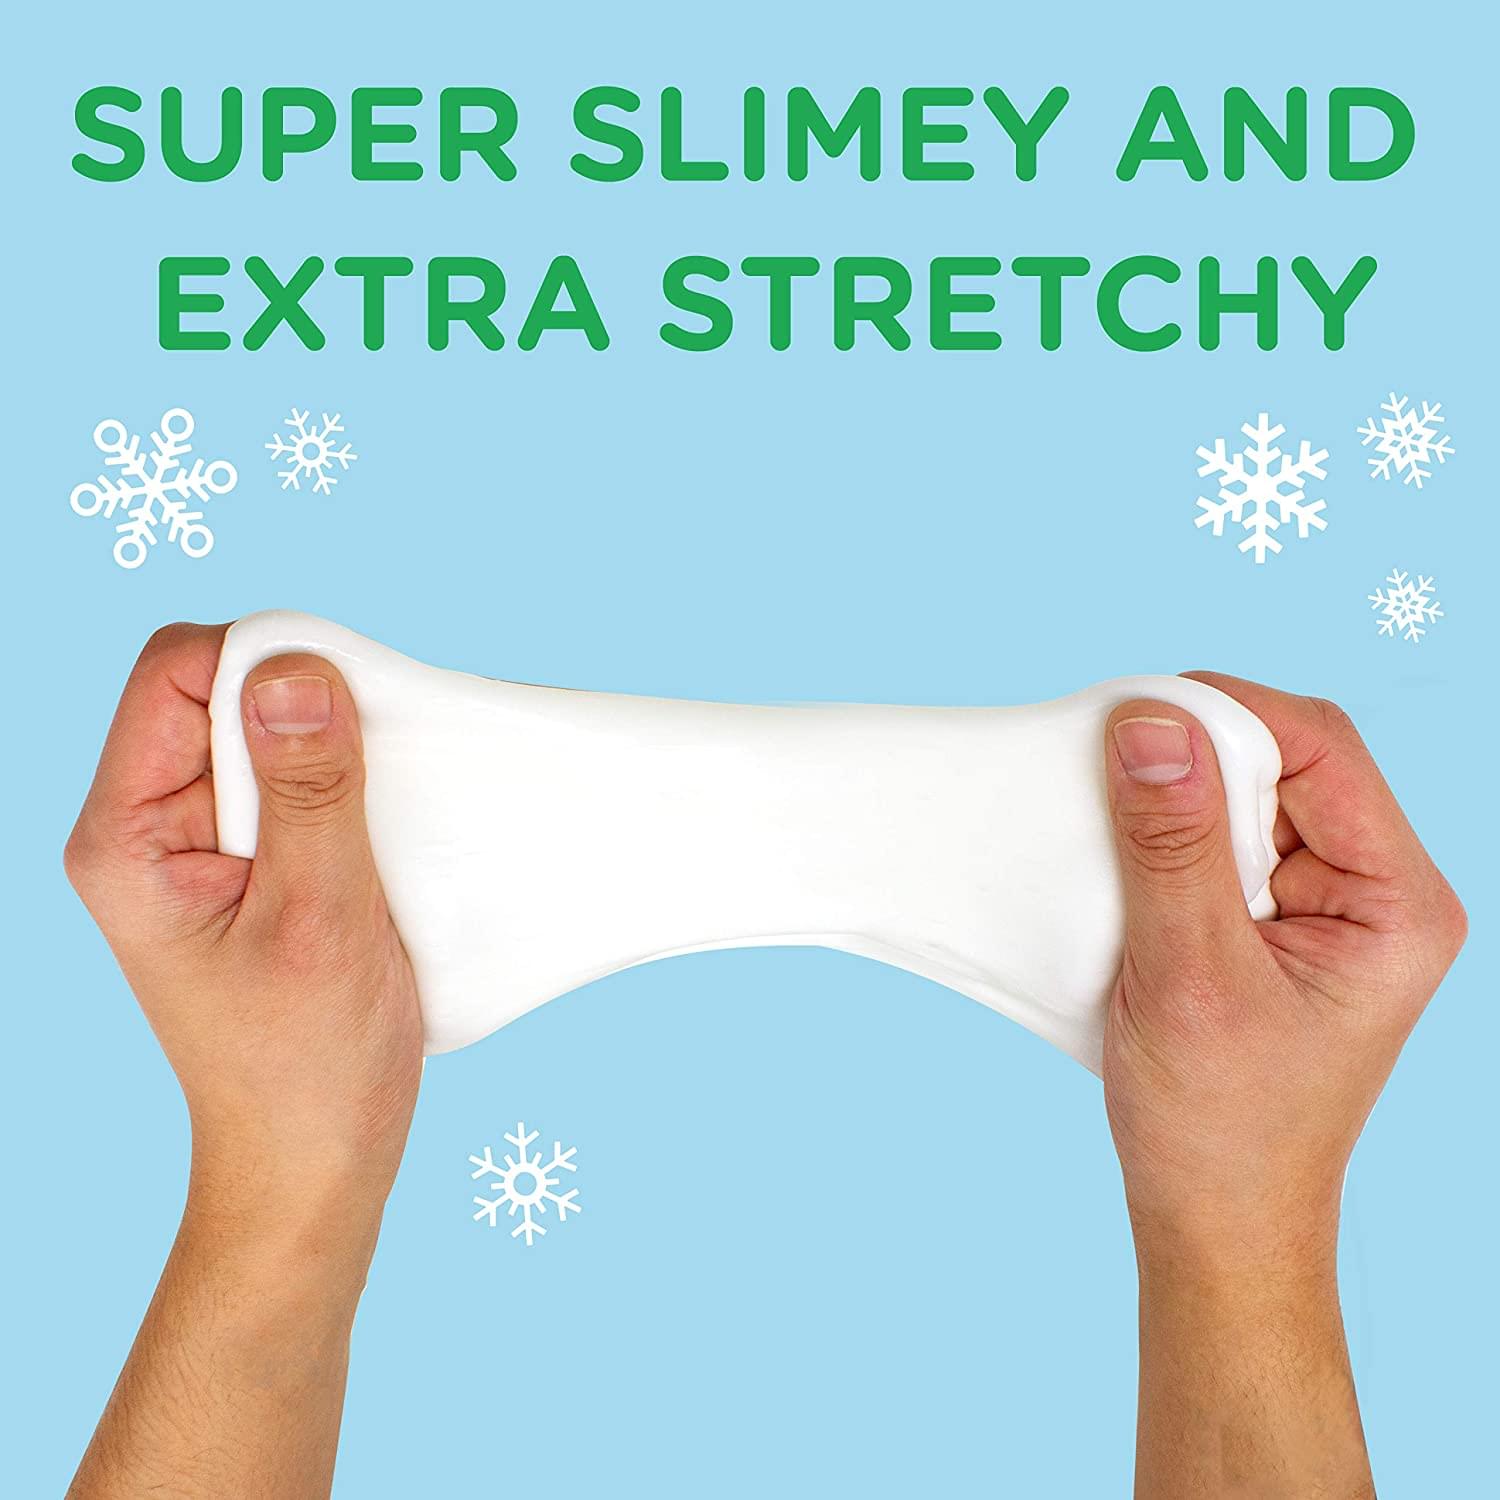 Snowman Snot 1 Non-Toxic White Slime Kit